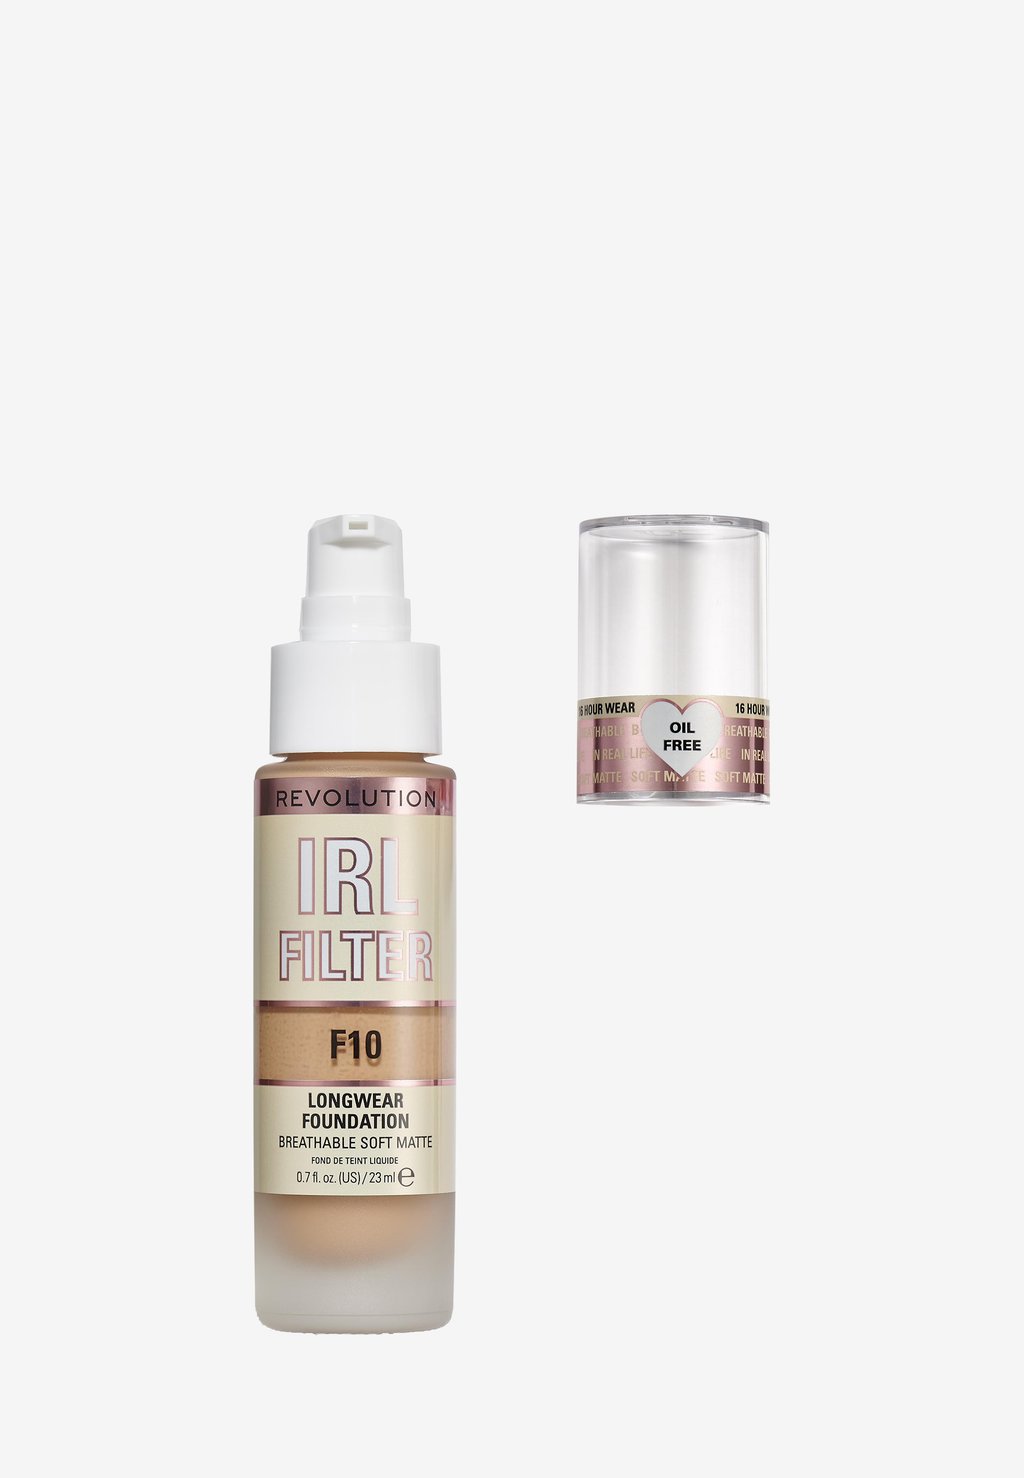 Тональный крем Irl Filter Longwear Foundation Makeup Revolution, цвет f10